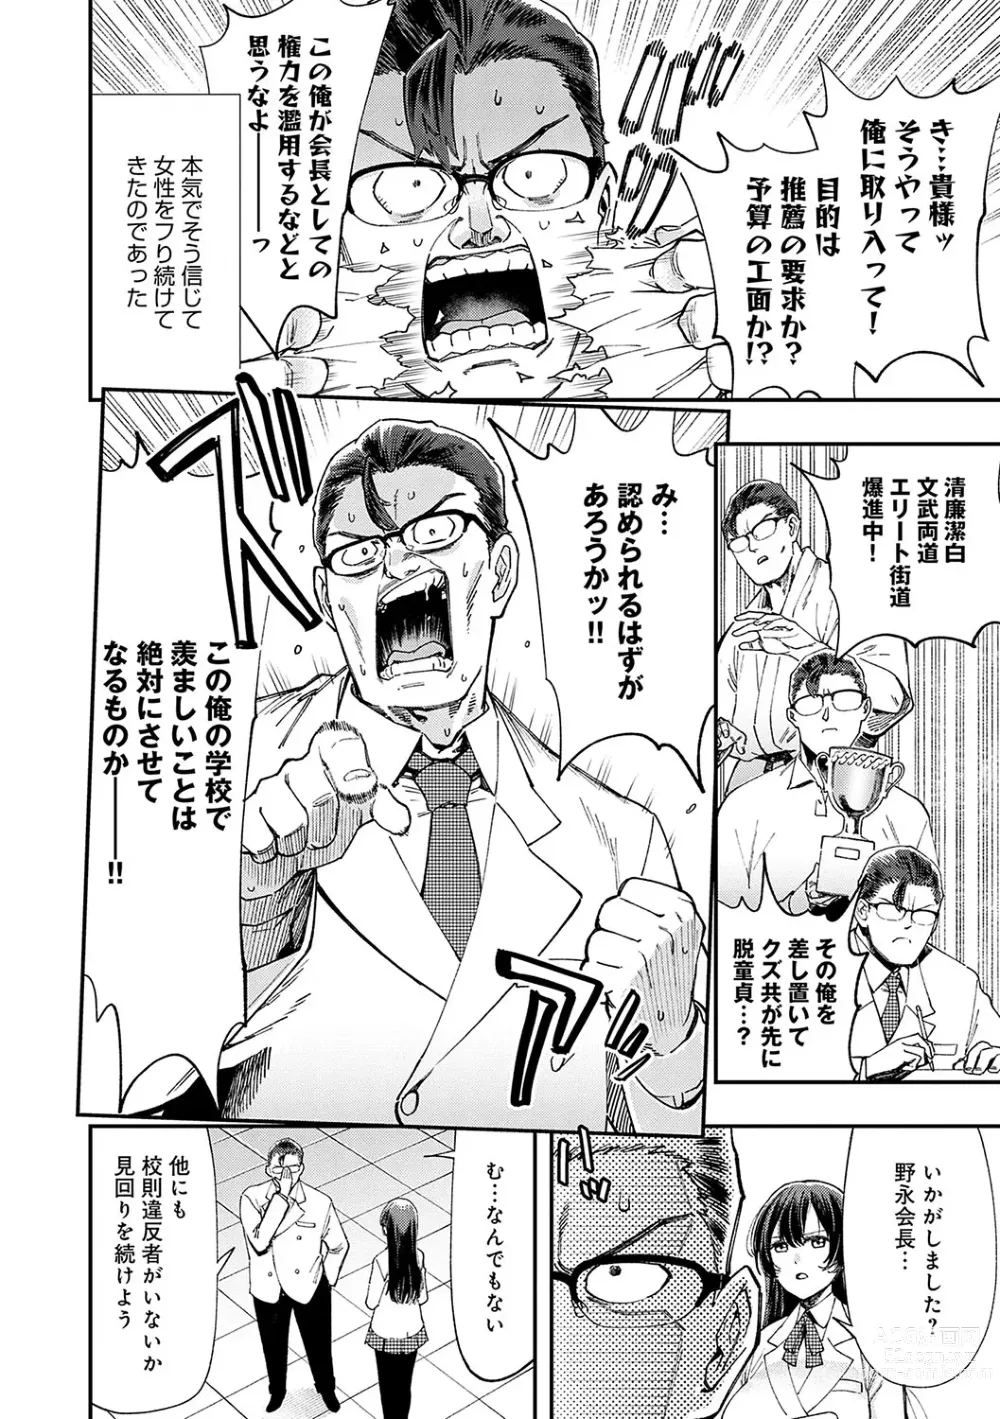 Page 7 of manga Kashikoi Oppai